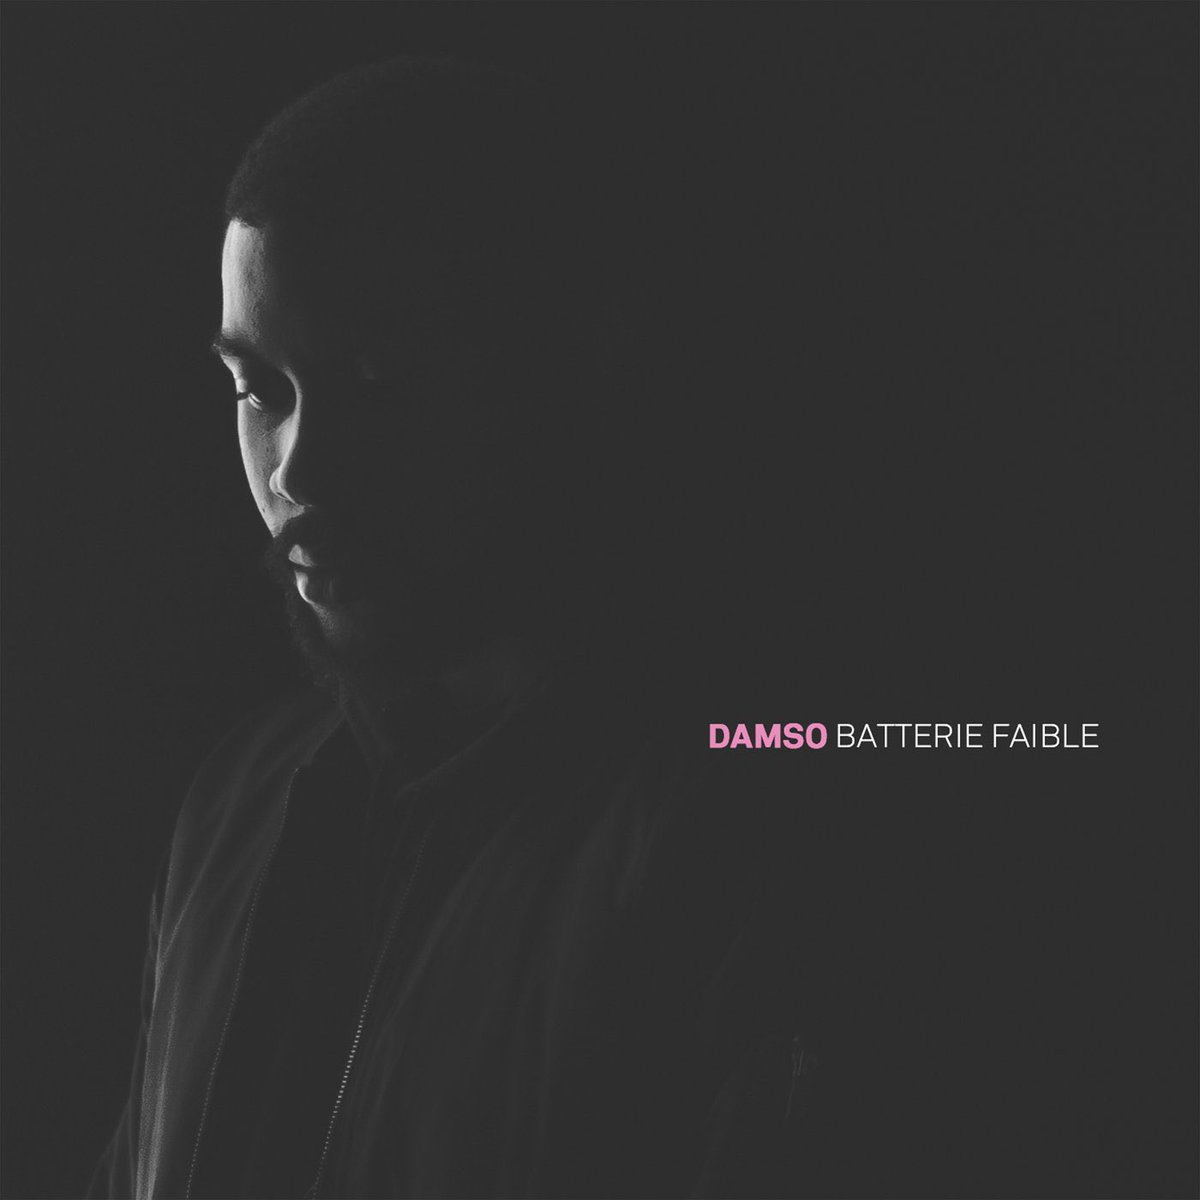 Énormément de retours positifs suite à cet album que Damso nous propose ! Le monde du rap français commence a se dire que le 92i tient une grosse pépite du rap francophone !